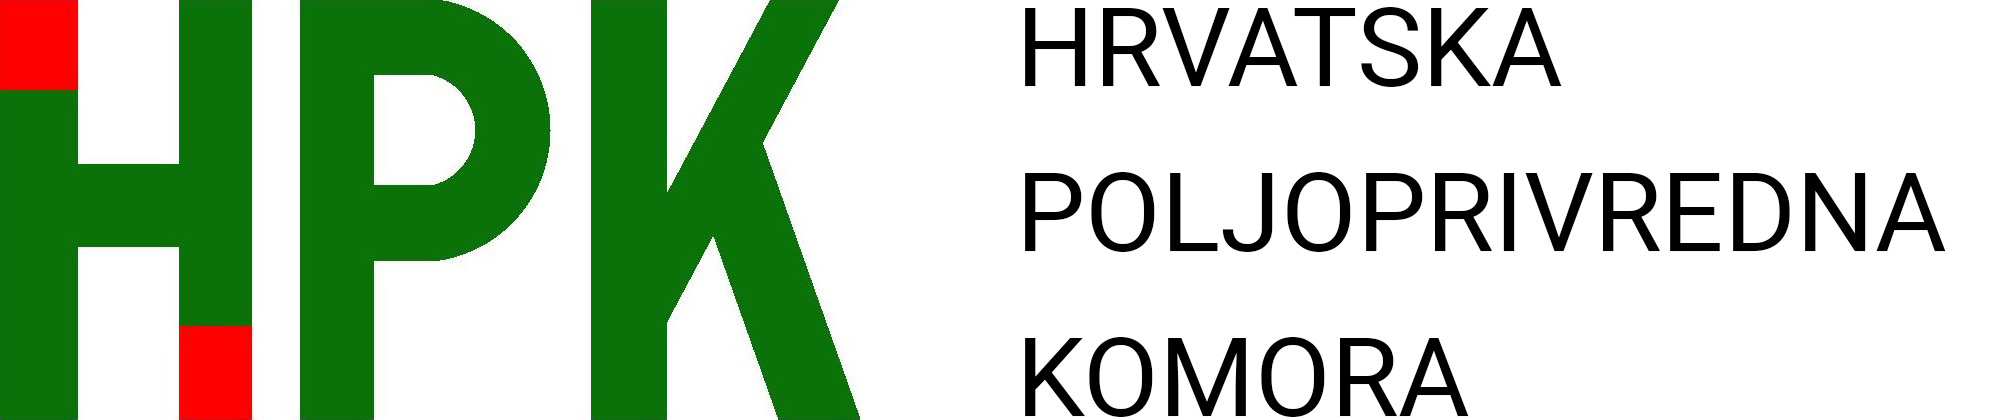 Nacrt prijedloga Zakona o HPK usvojen na Vladi RH | HPK